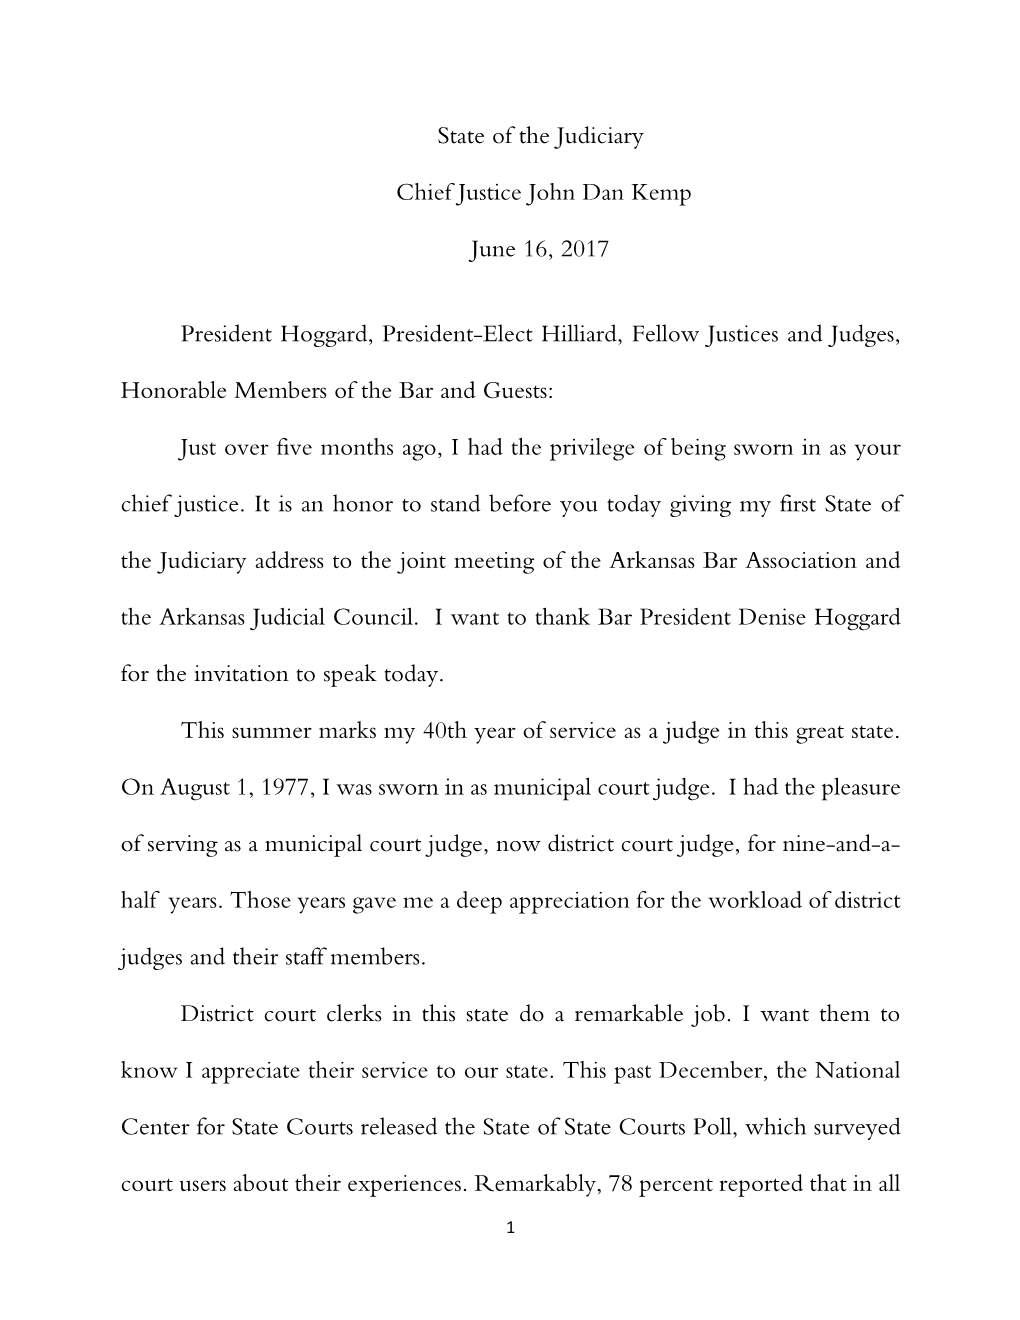 State of the Judiciary Chief Justice John Dan Kemp June 16, 2017